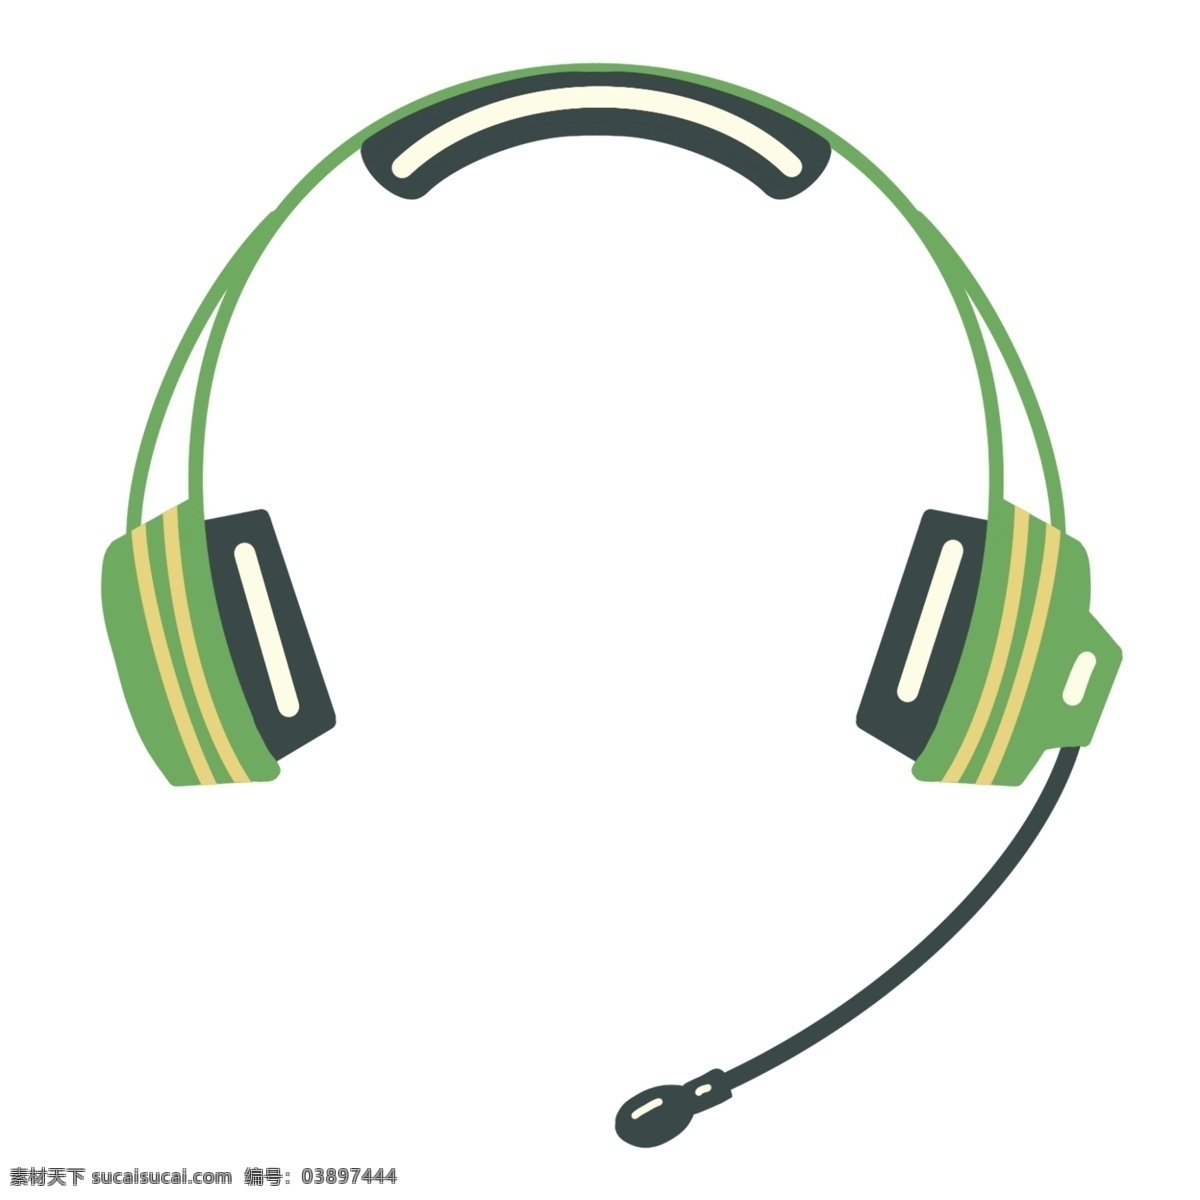 新闻 监听 耳机 耳麦 新闻耳麦 时尚 电子产品 绿色耳机插画 监听耳机耳麦 动感耳机耳麦 插画